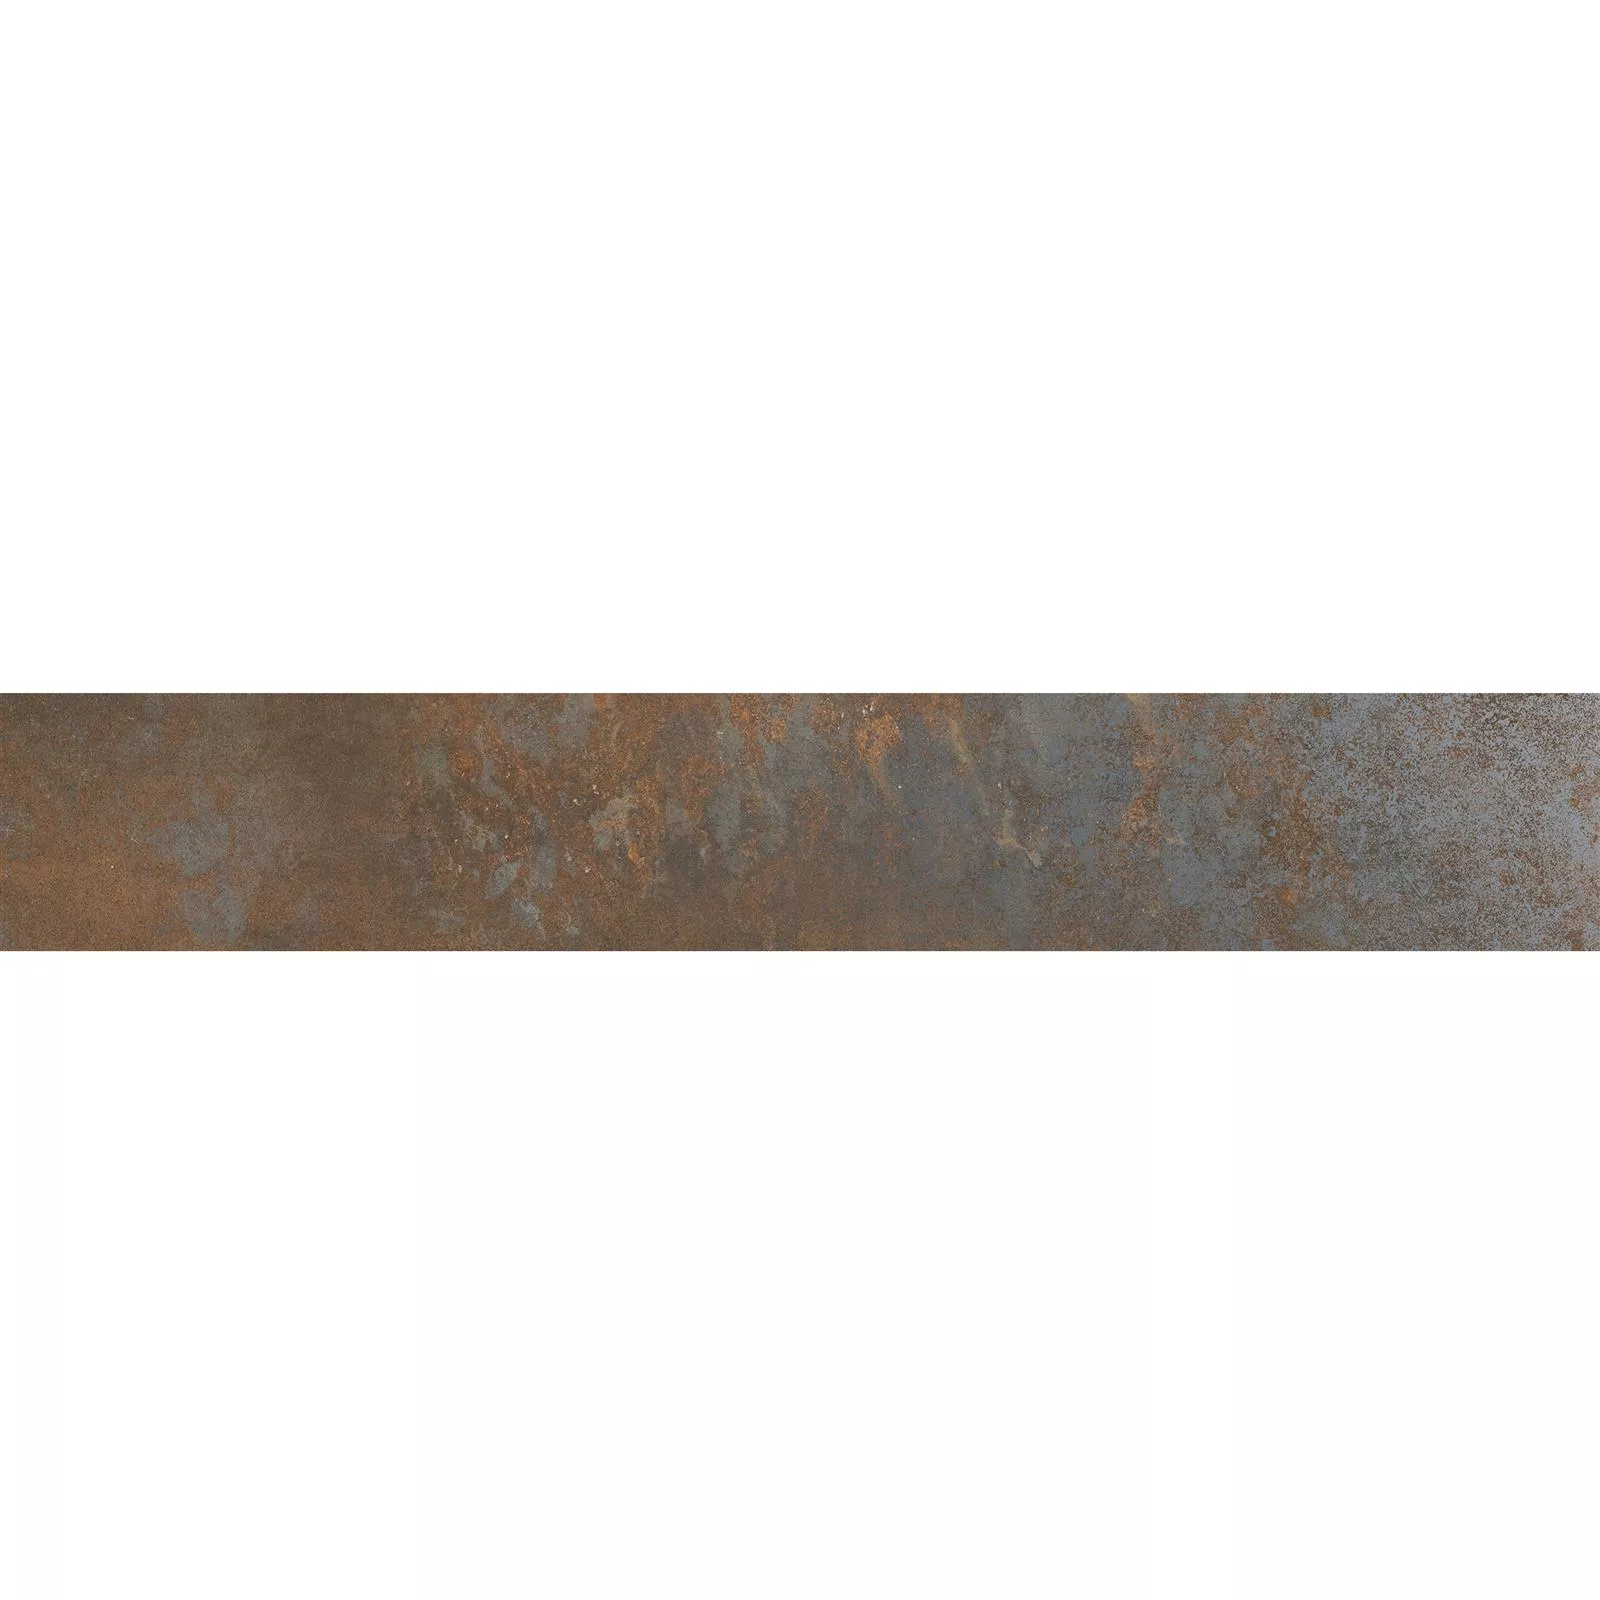 Σοβατεπί Sierra Μεταλλική Εμφάνιση Rust